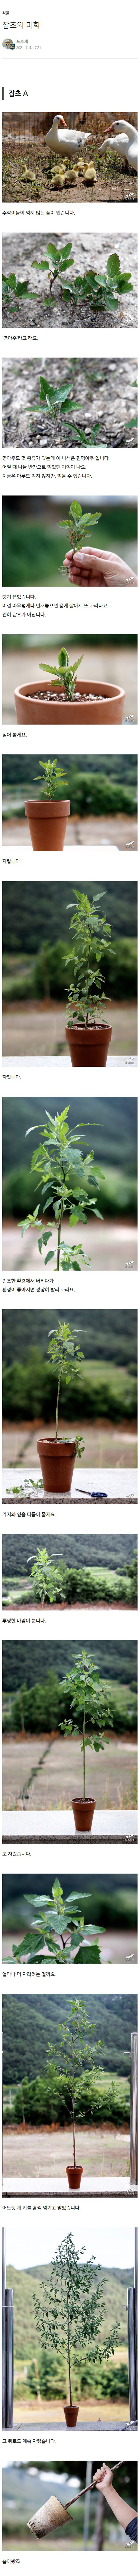 썸네일-흔한 잡초를 키운 드루이드.jpg-이미지